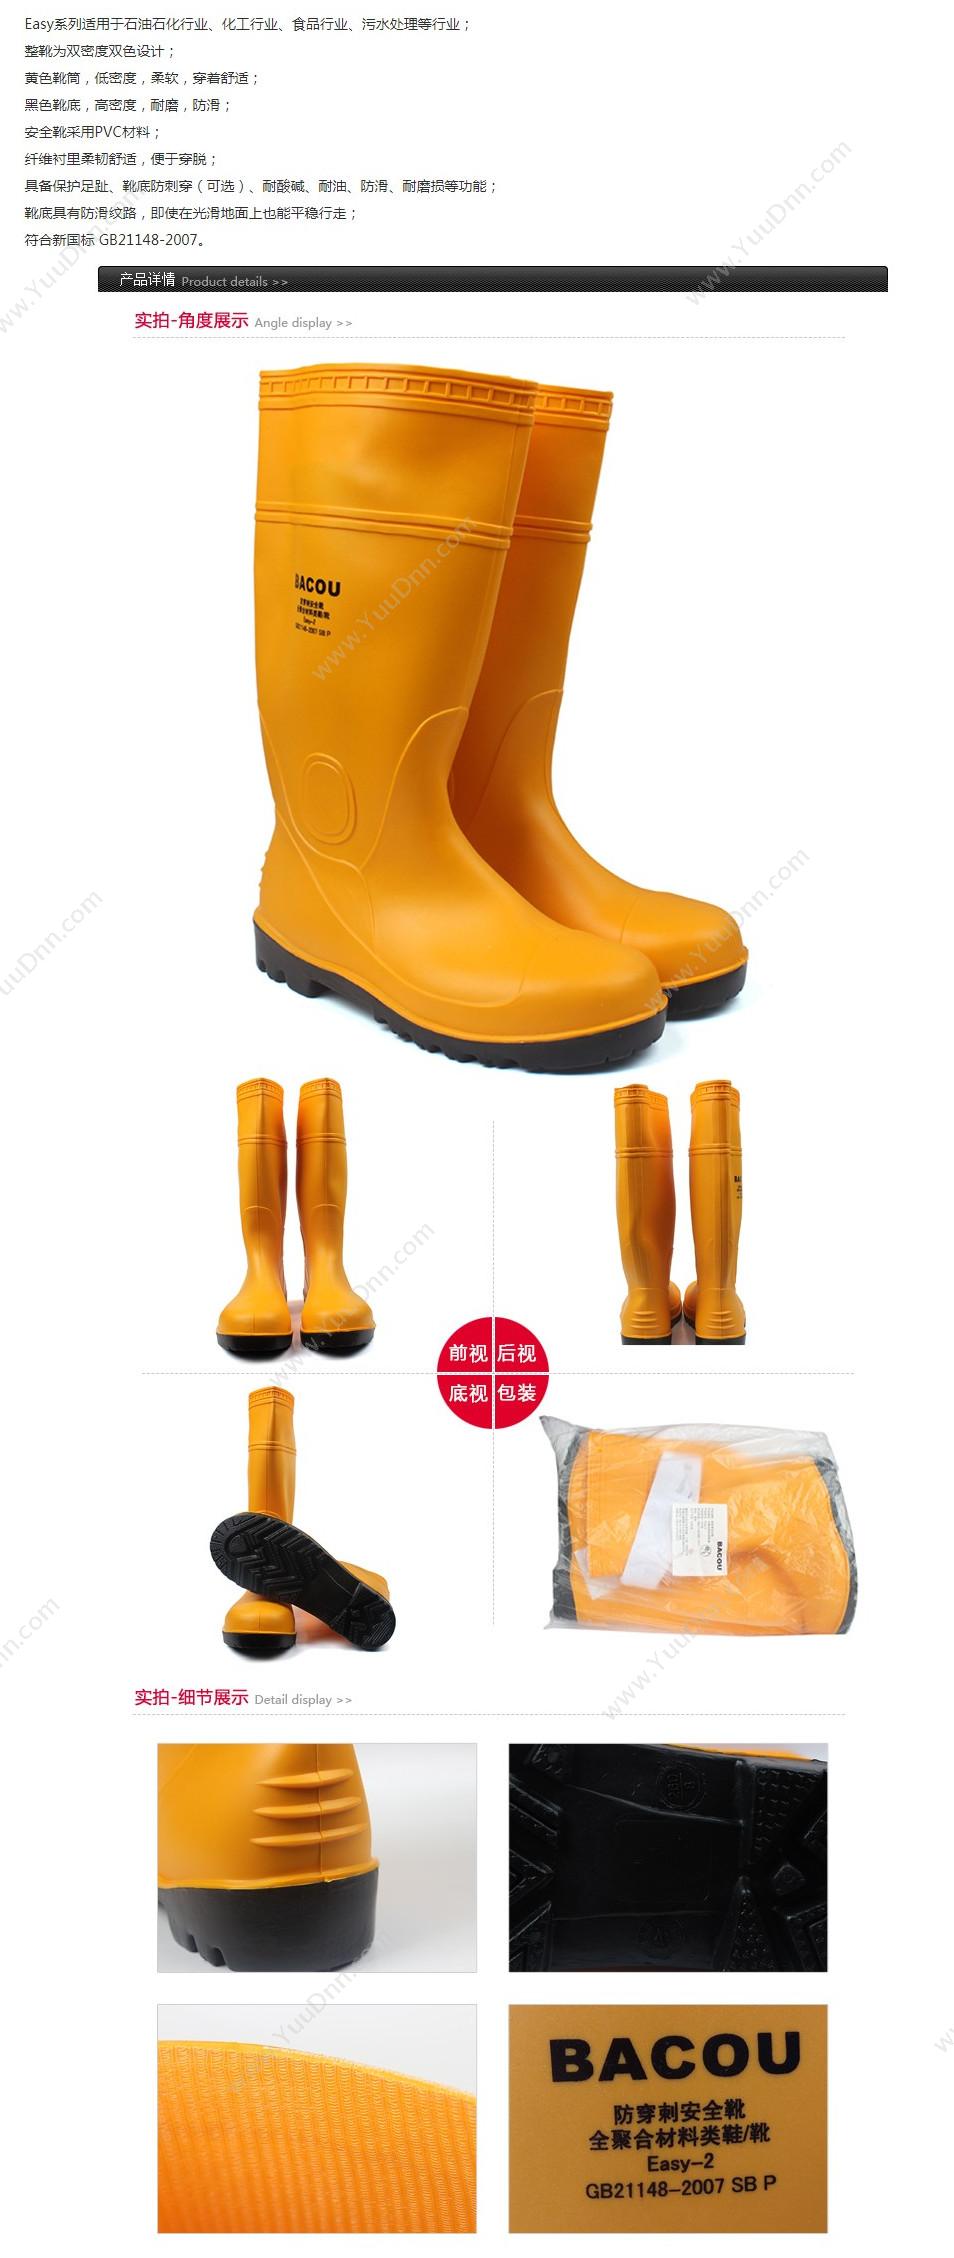 霍尼韦尔 Honeywell 75708 PVC 安全靴Easy 轻型 39 橘黄色 10双/箱 轻便鞋安全靴